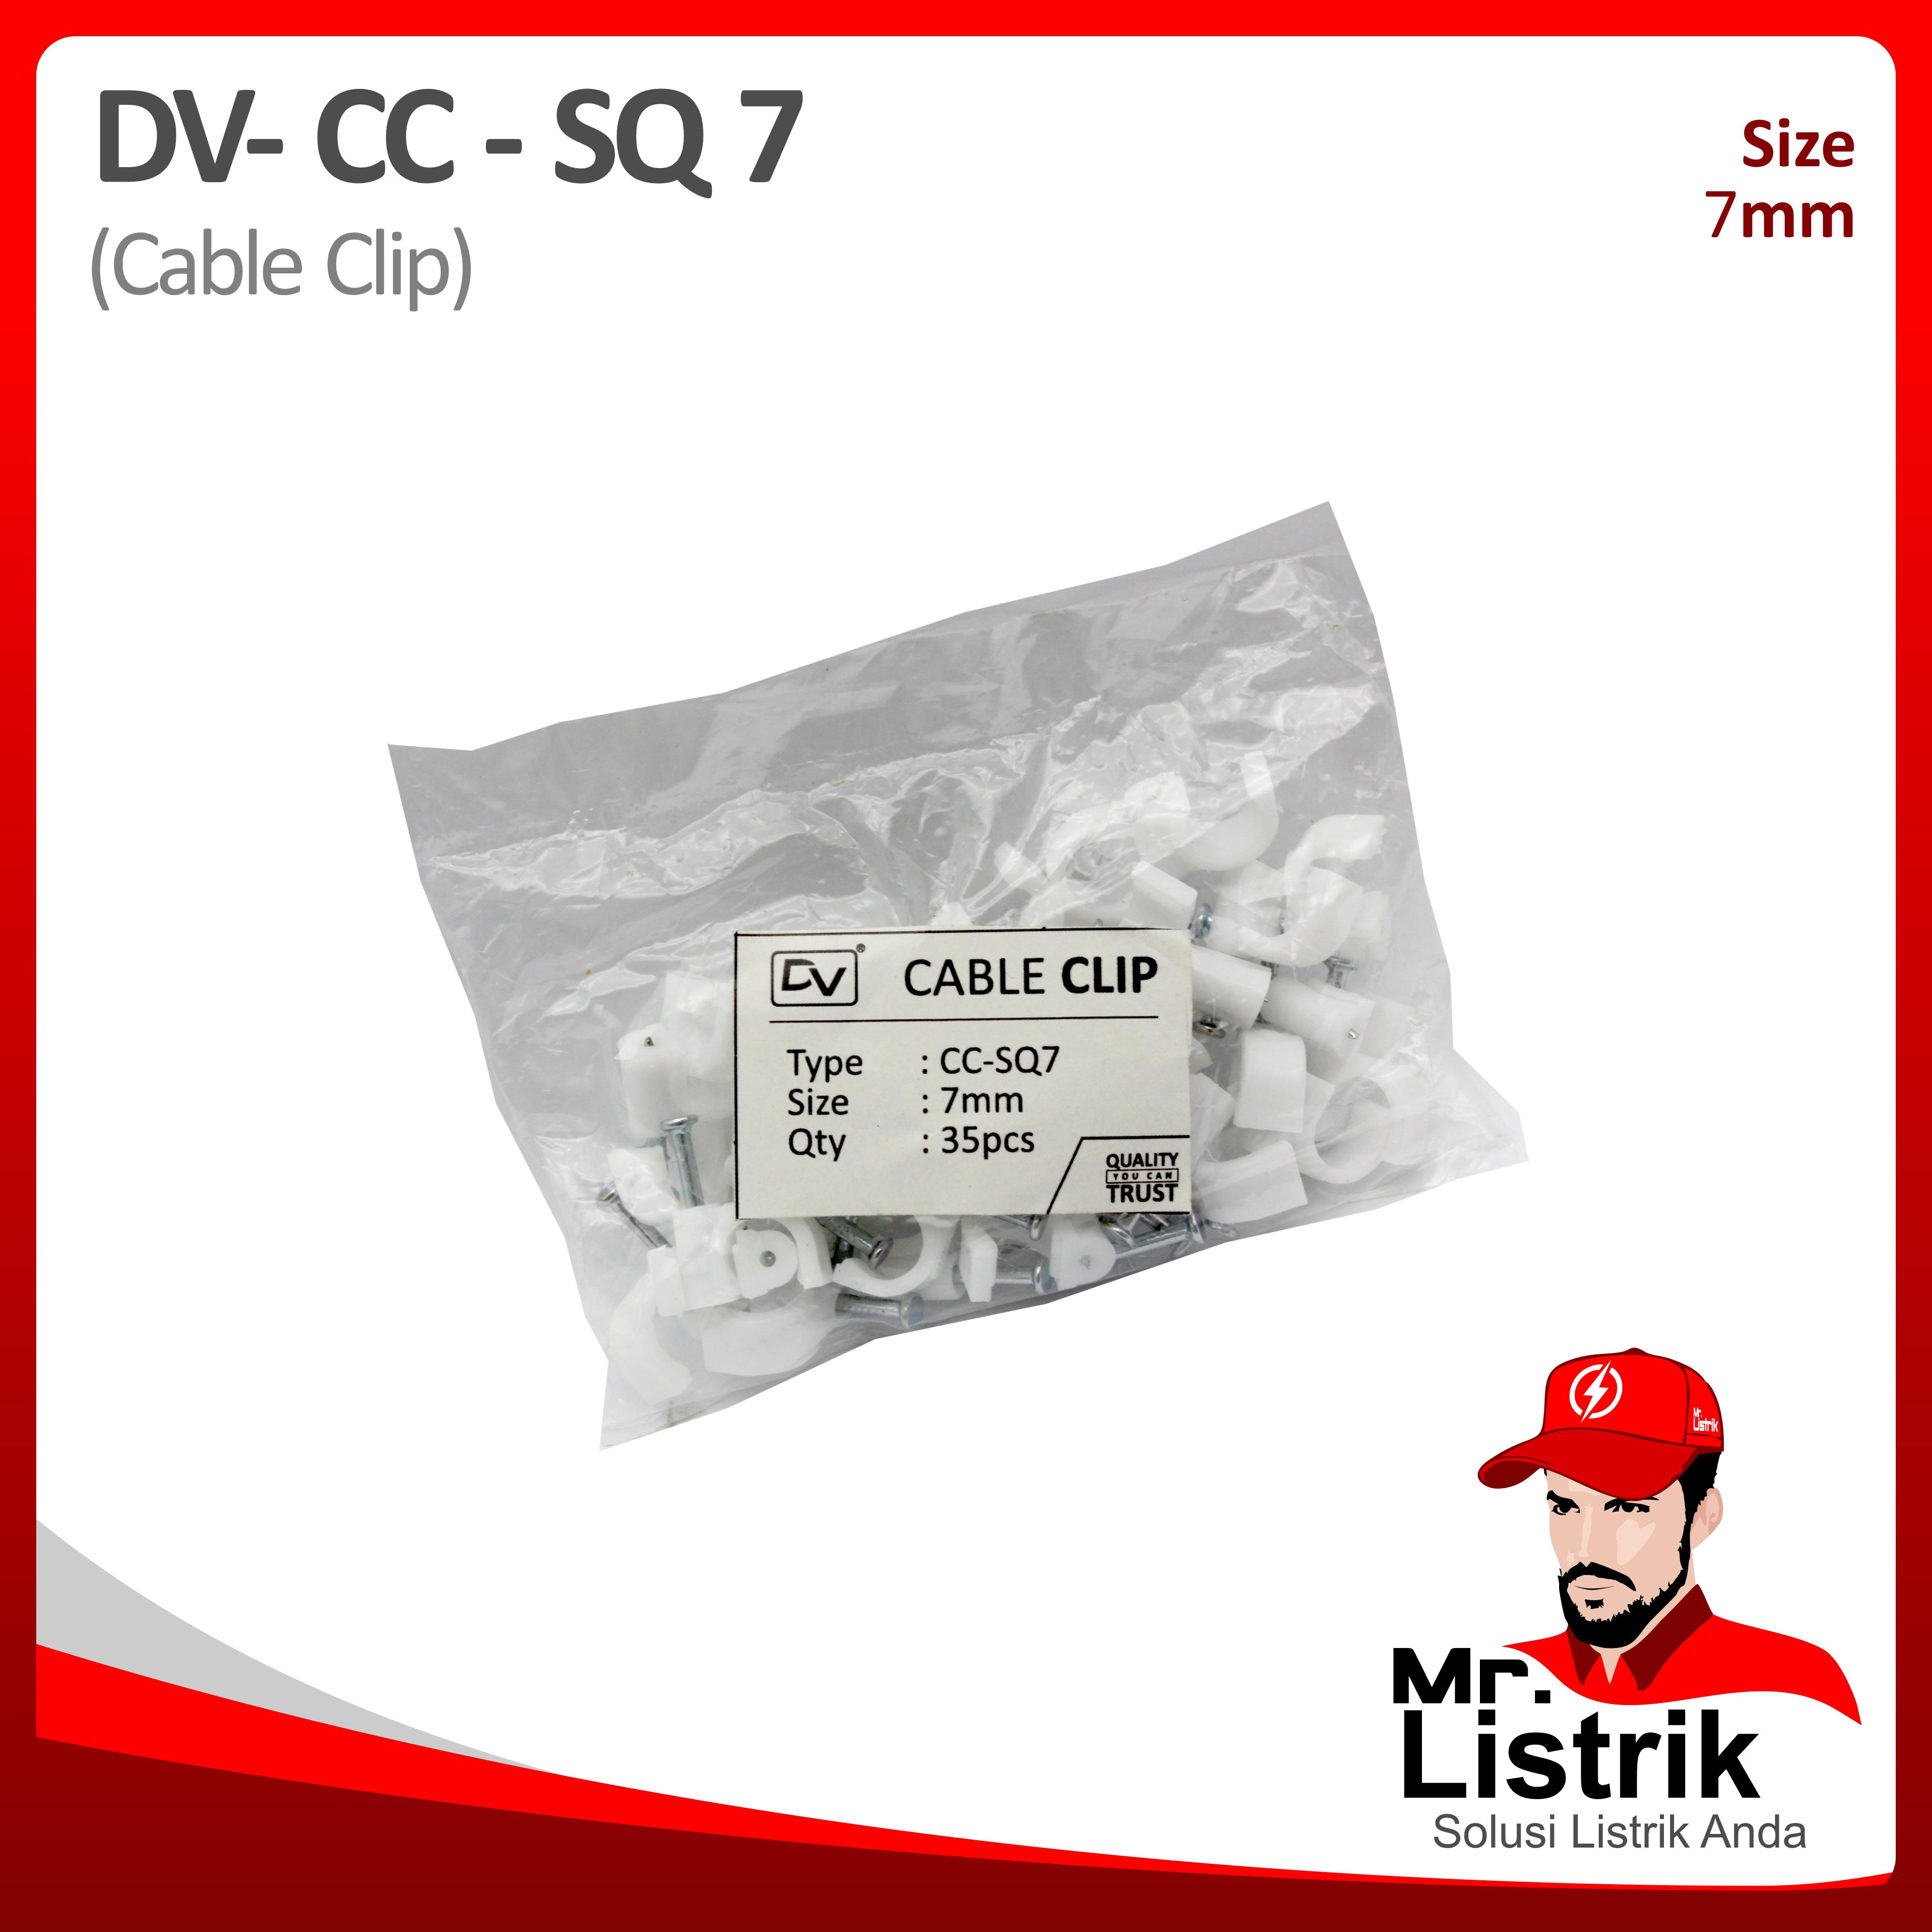 Cable Clip 7mm DV CC-SQ 7